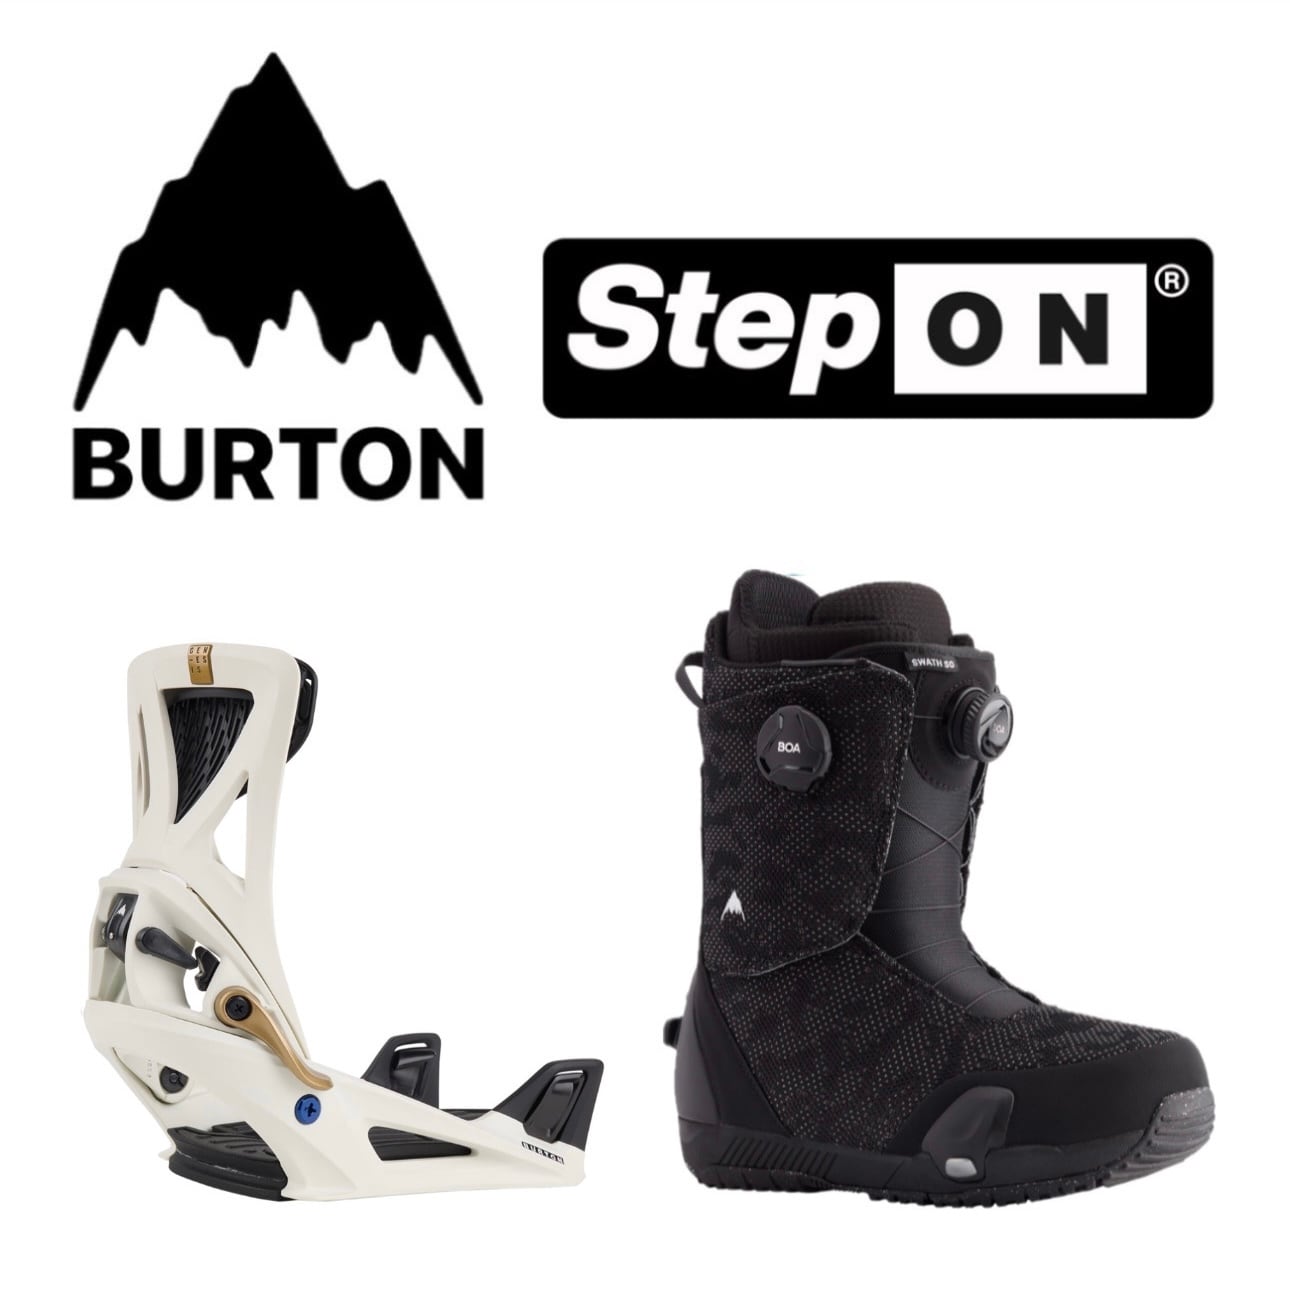 BURTON STEP ON（S）のブーツ（26）とビンディングのセット